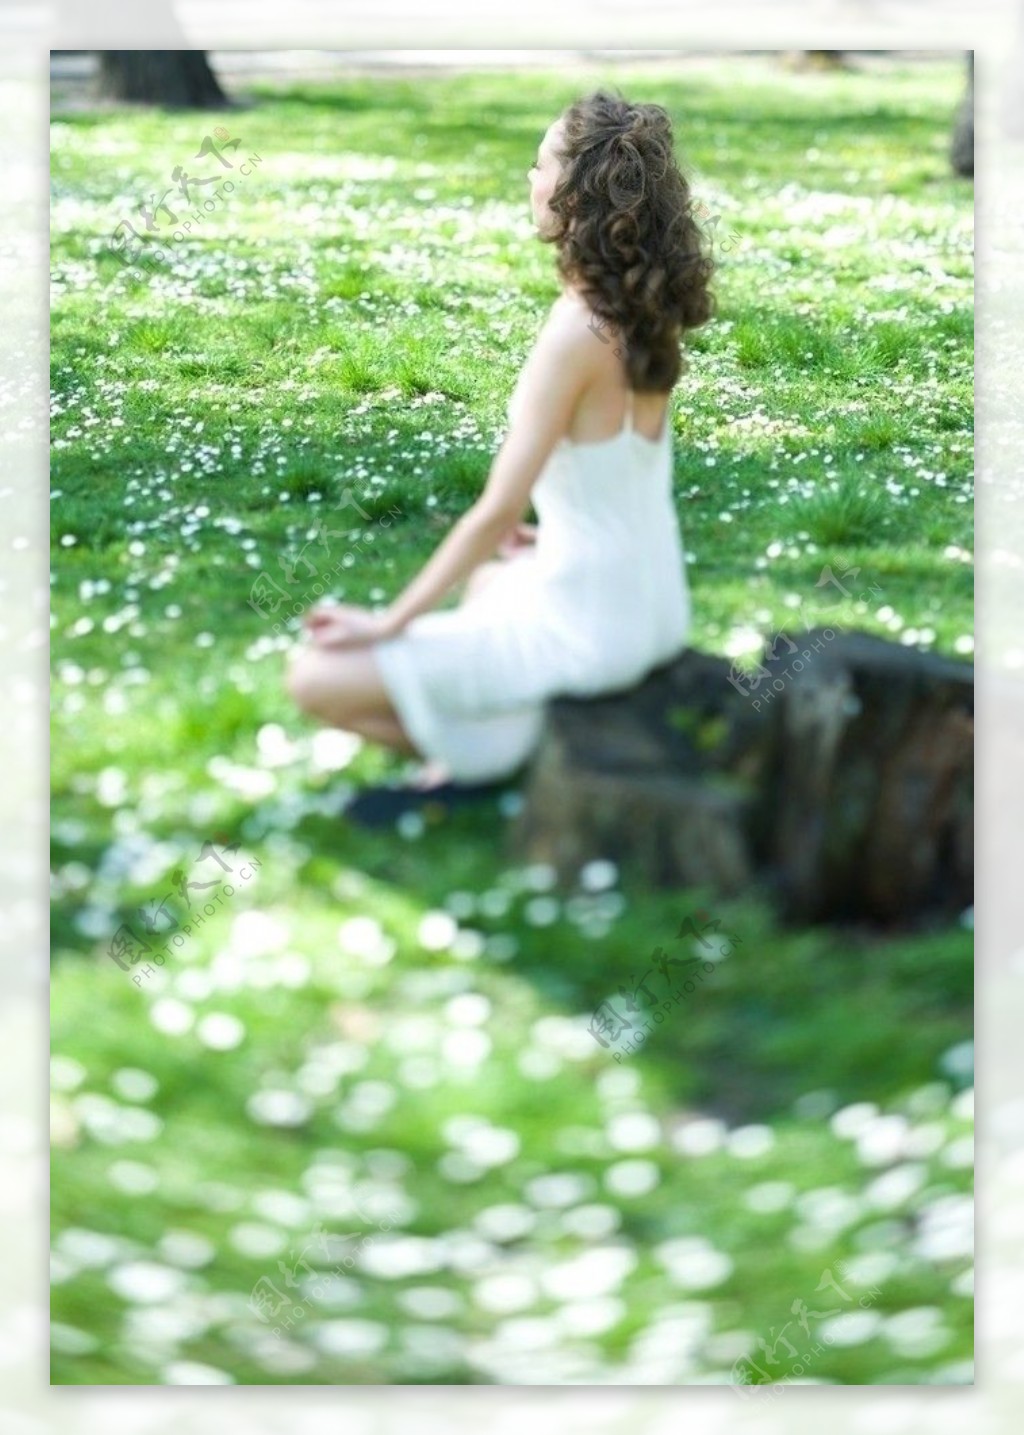 坐在绿草地上享受生活的美女图片